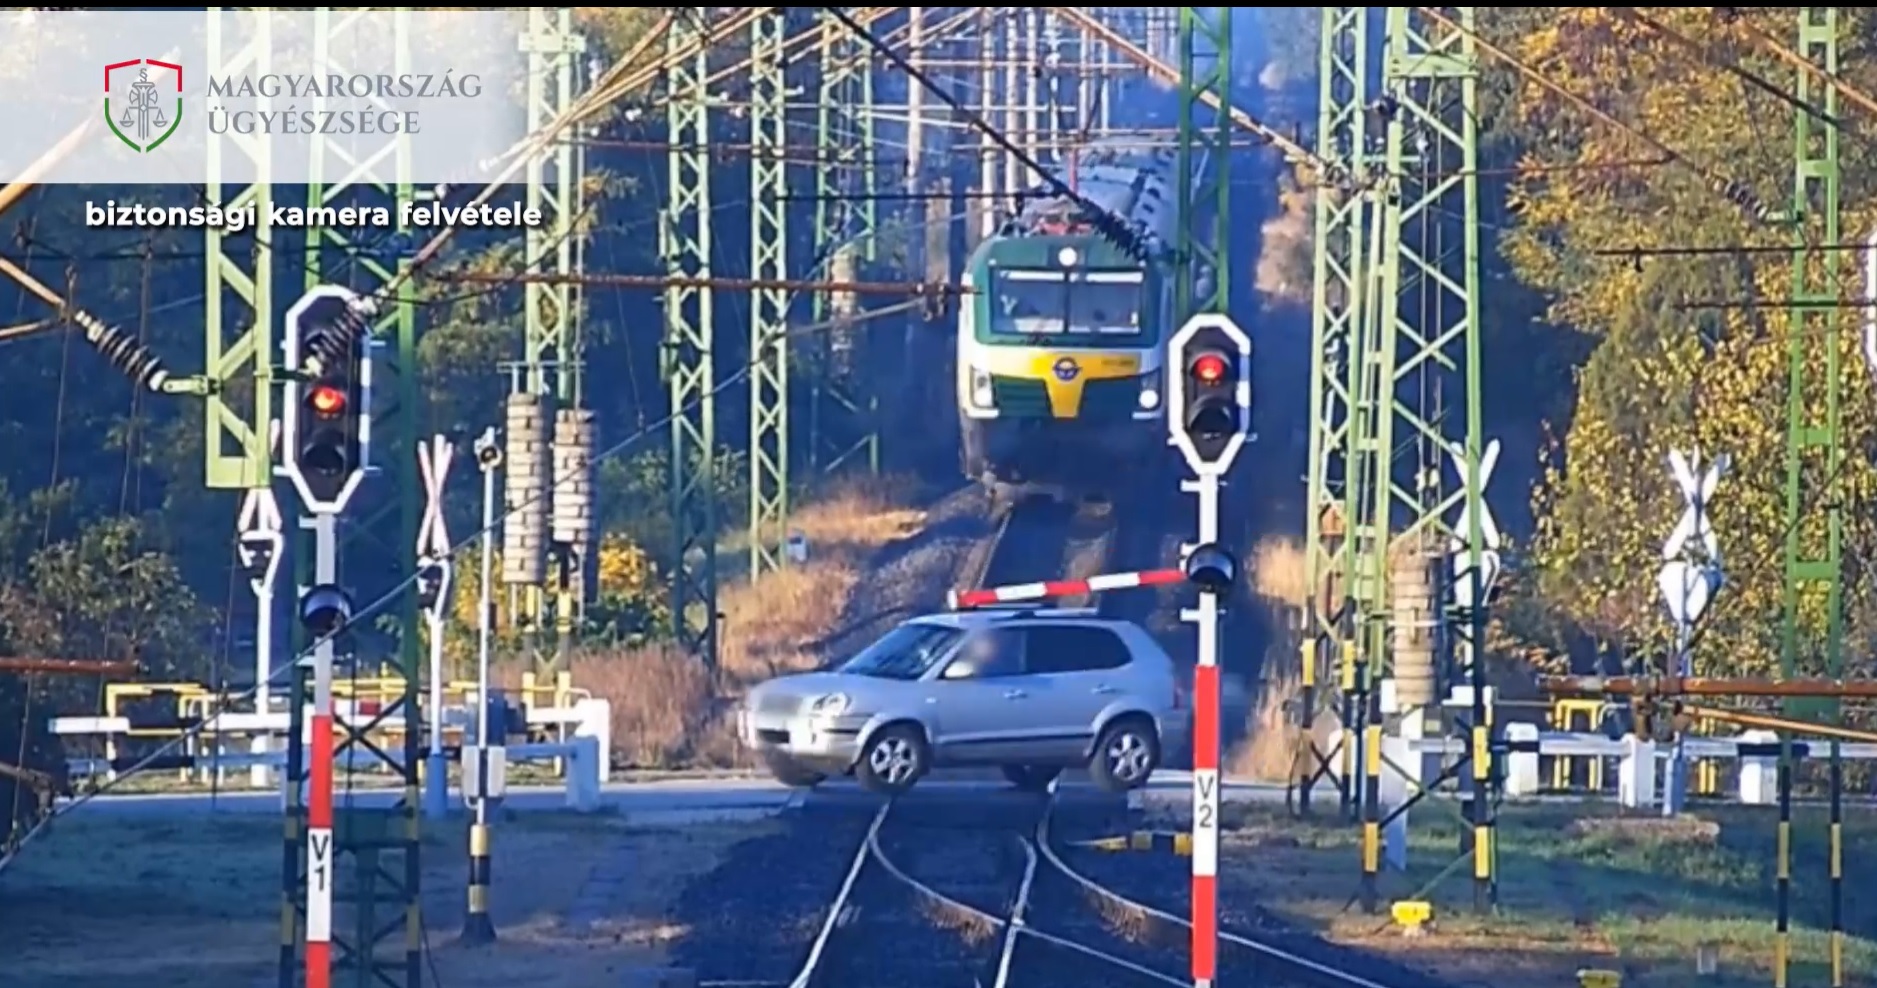 Videón, ahogy az autós letöri a sorompót és áthajt a vonat előtt